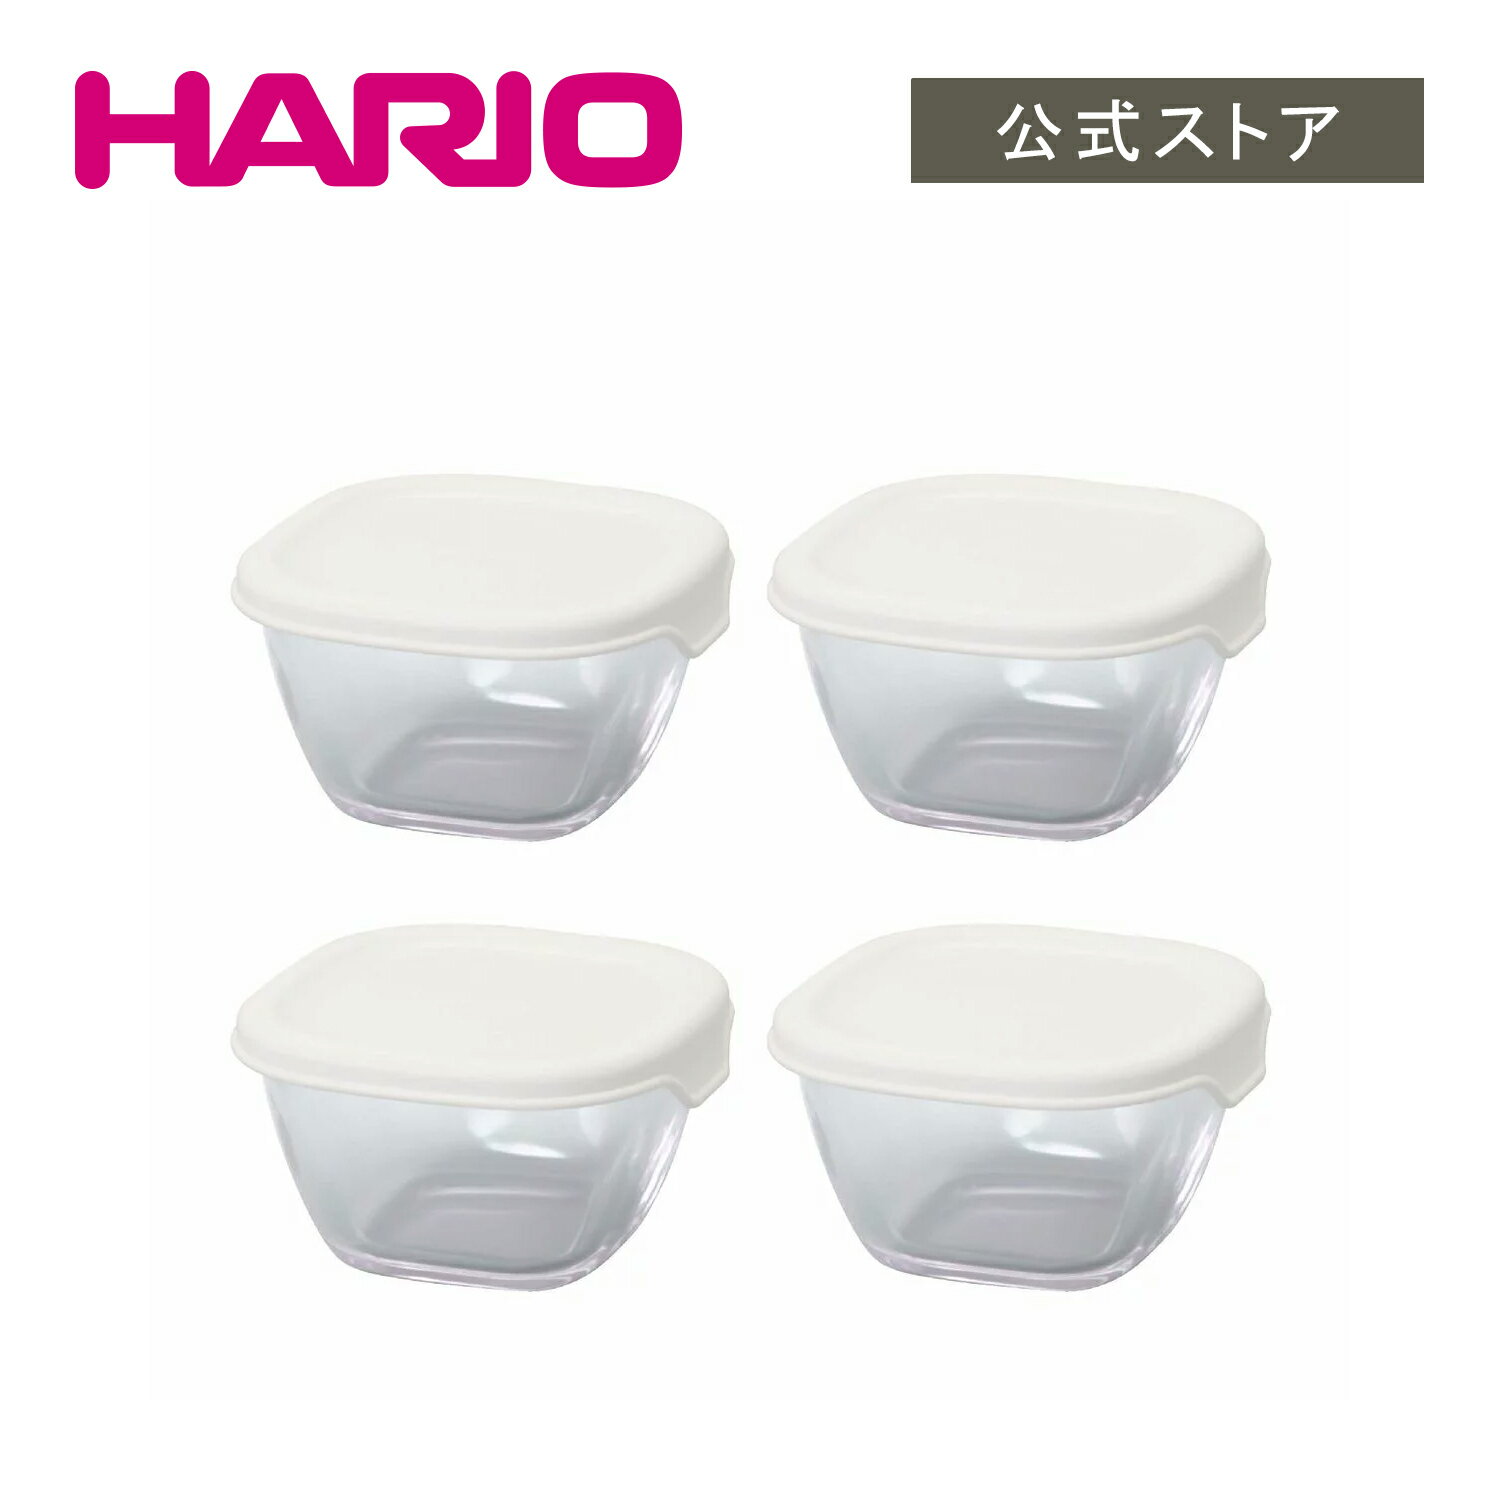 【公式ショップ】HARIO 耐熱ミニ角小鉢4個セット